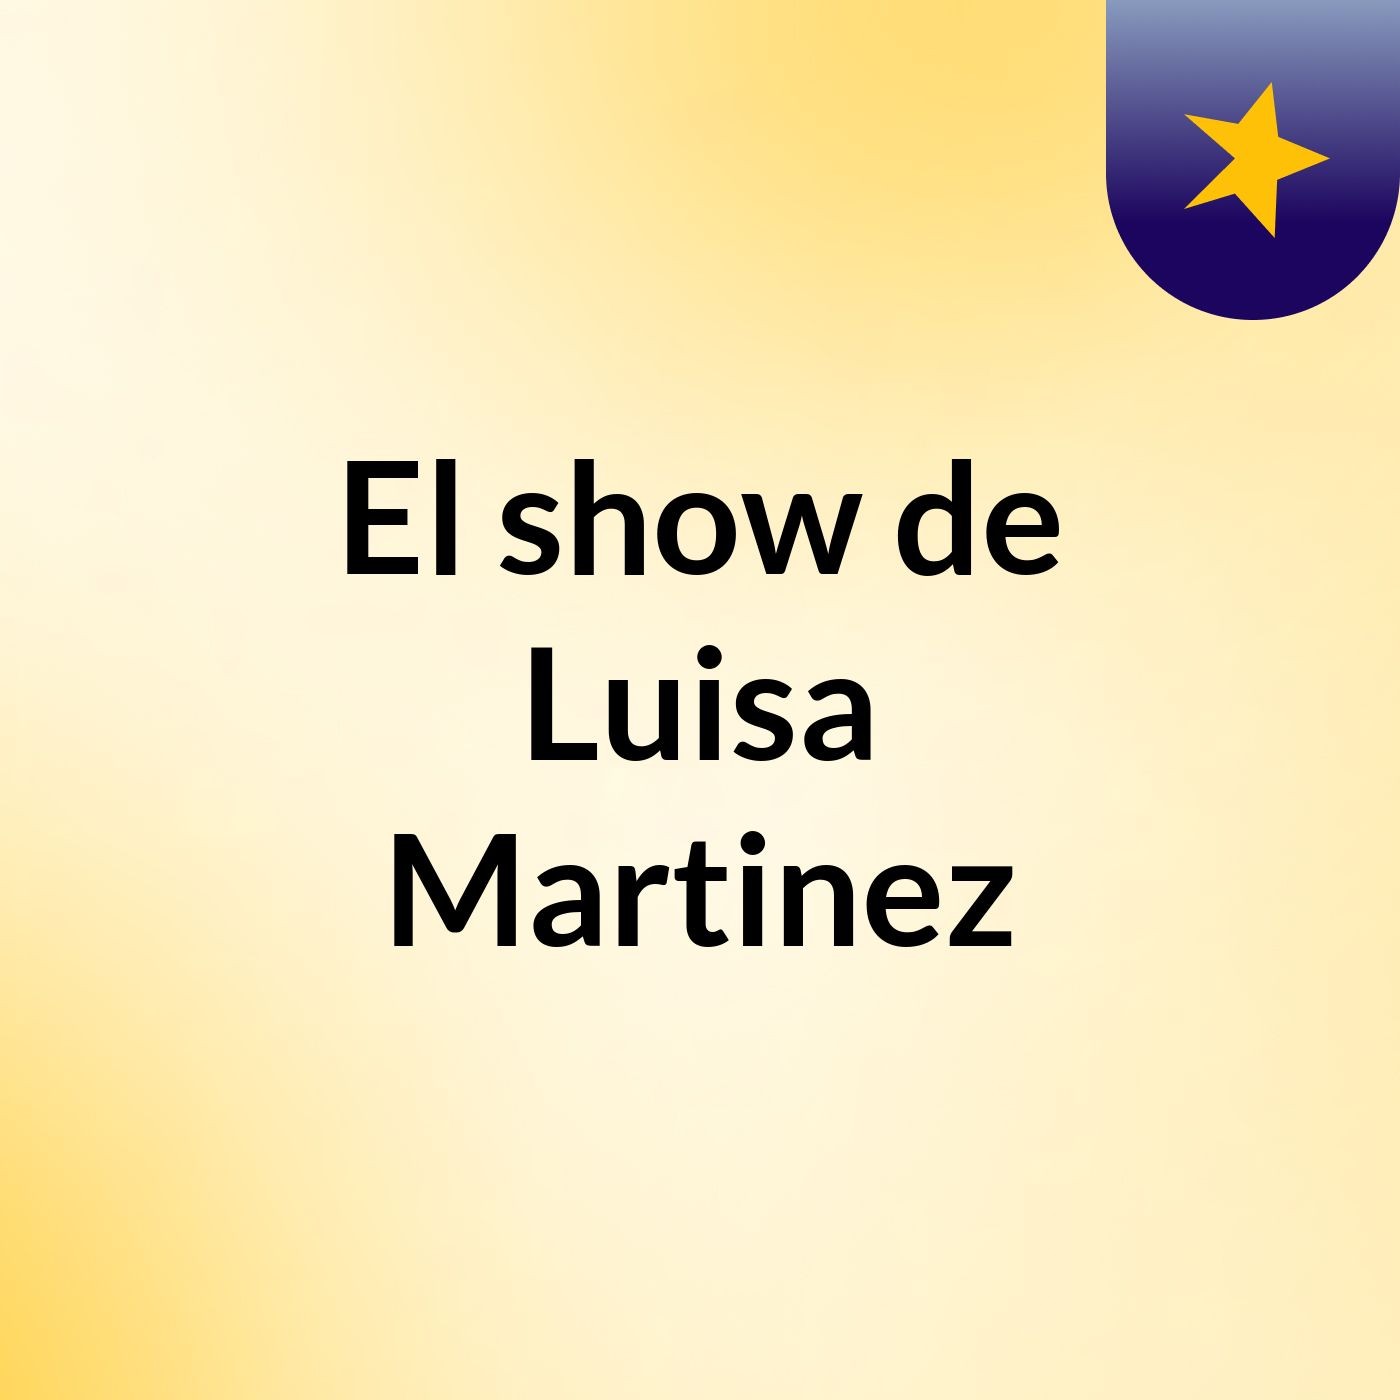 El show de Luisa Martinez